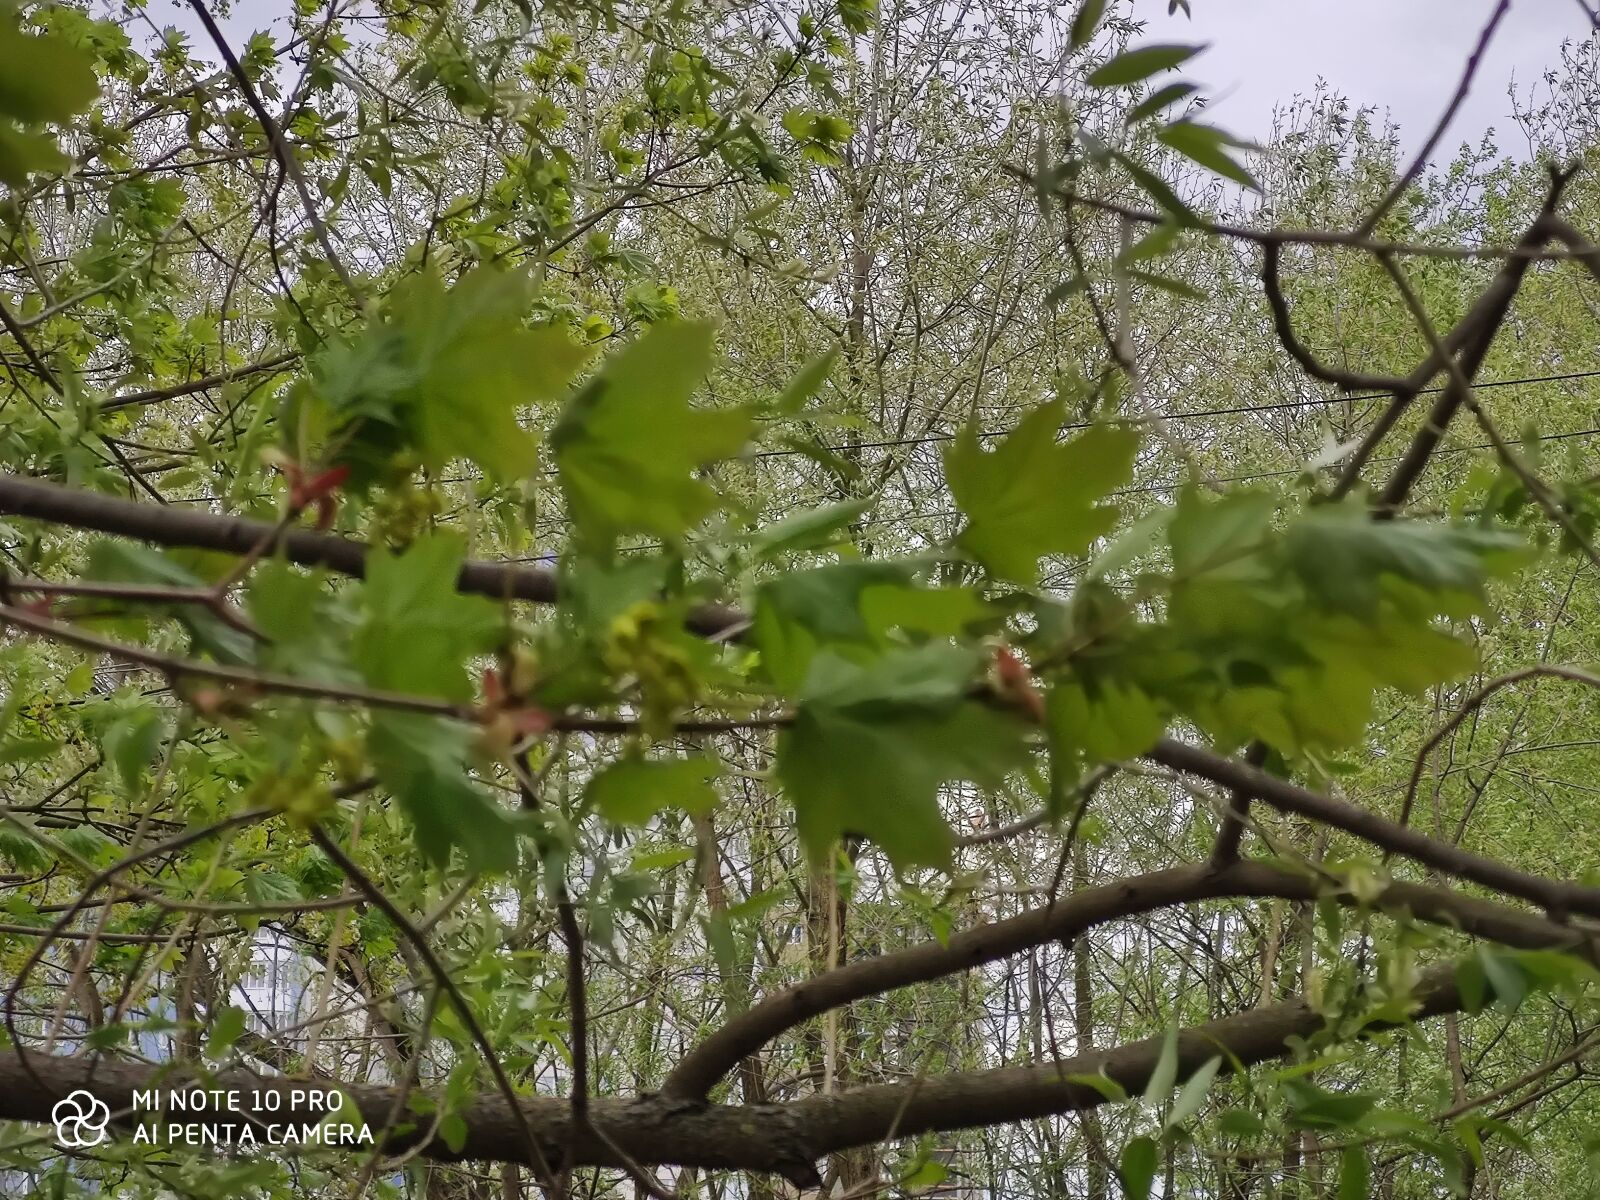 Xiaomi Mi Note 10 Pro sample photo. весна, дерево, природа photography